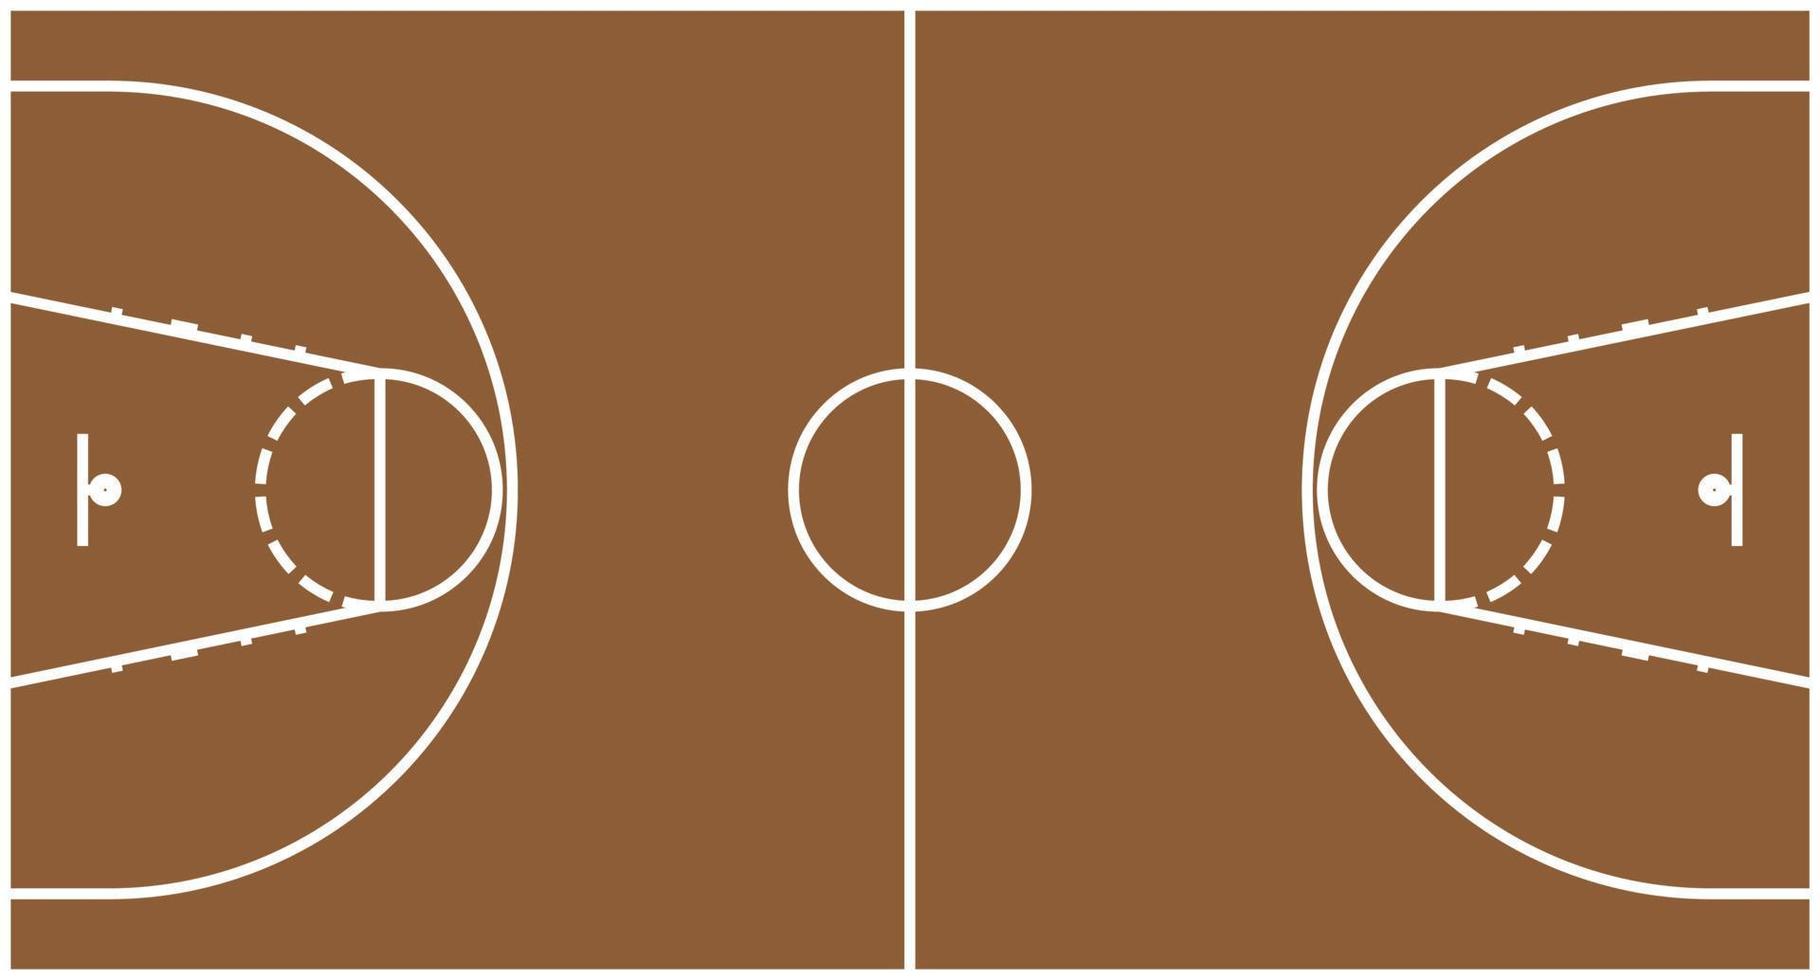 quadra de basquete com marcações, vetor isolado.